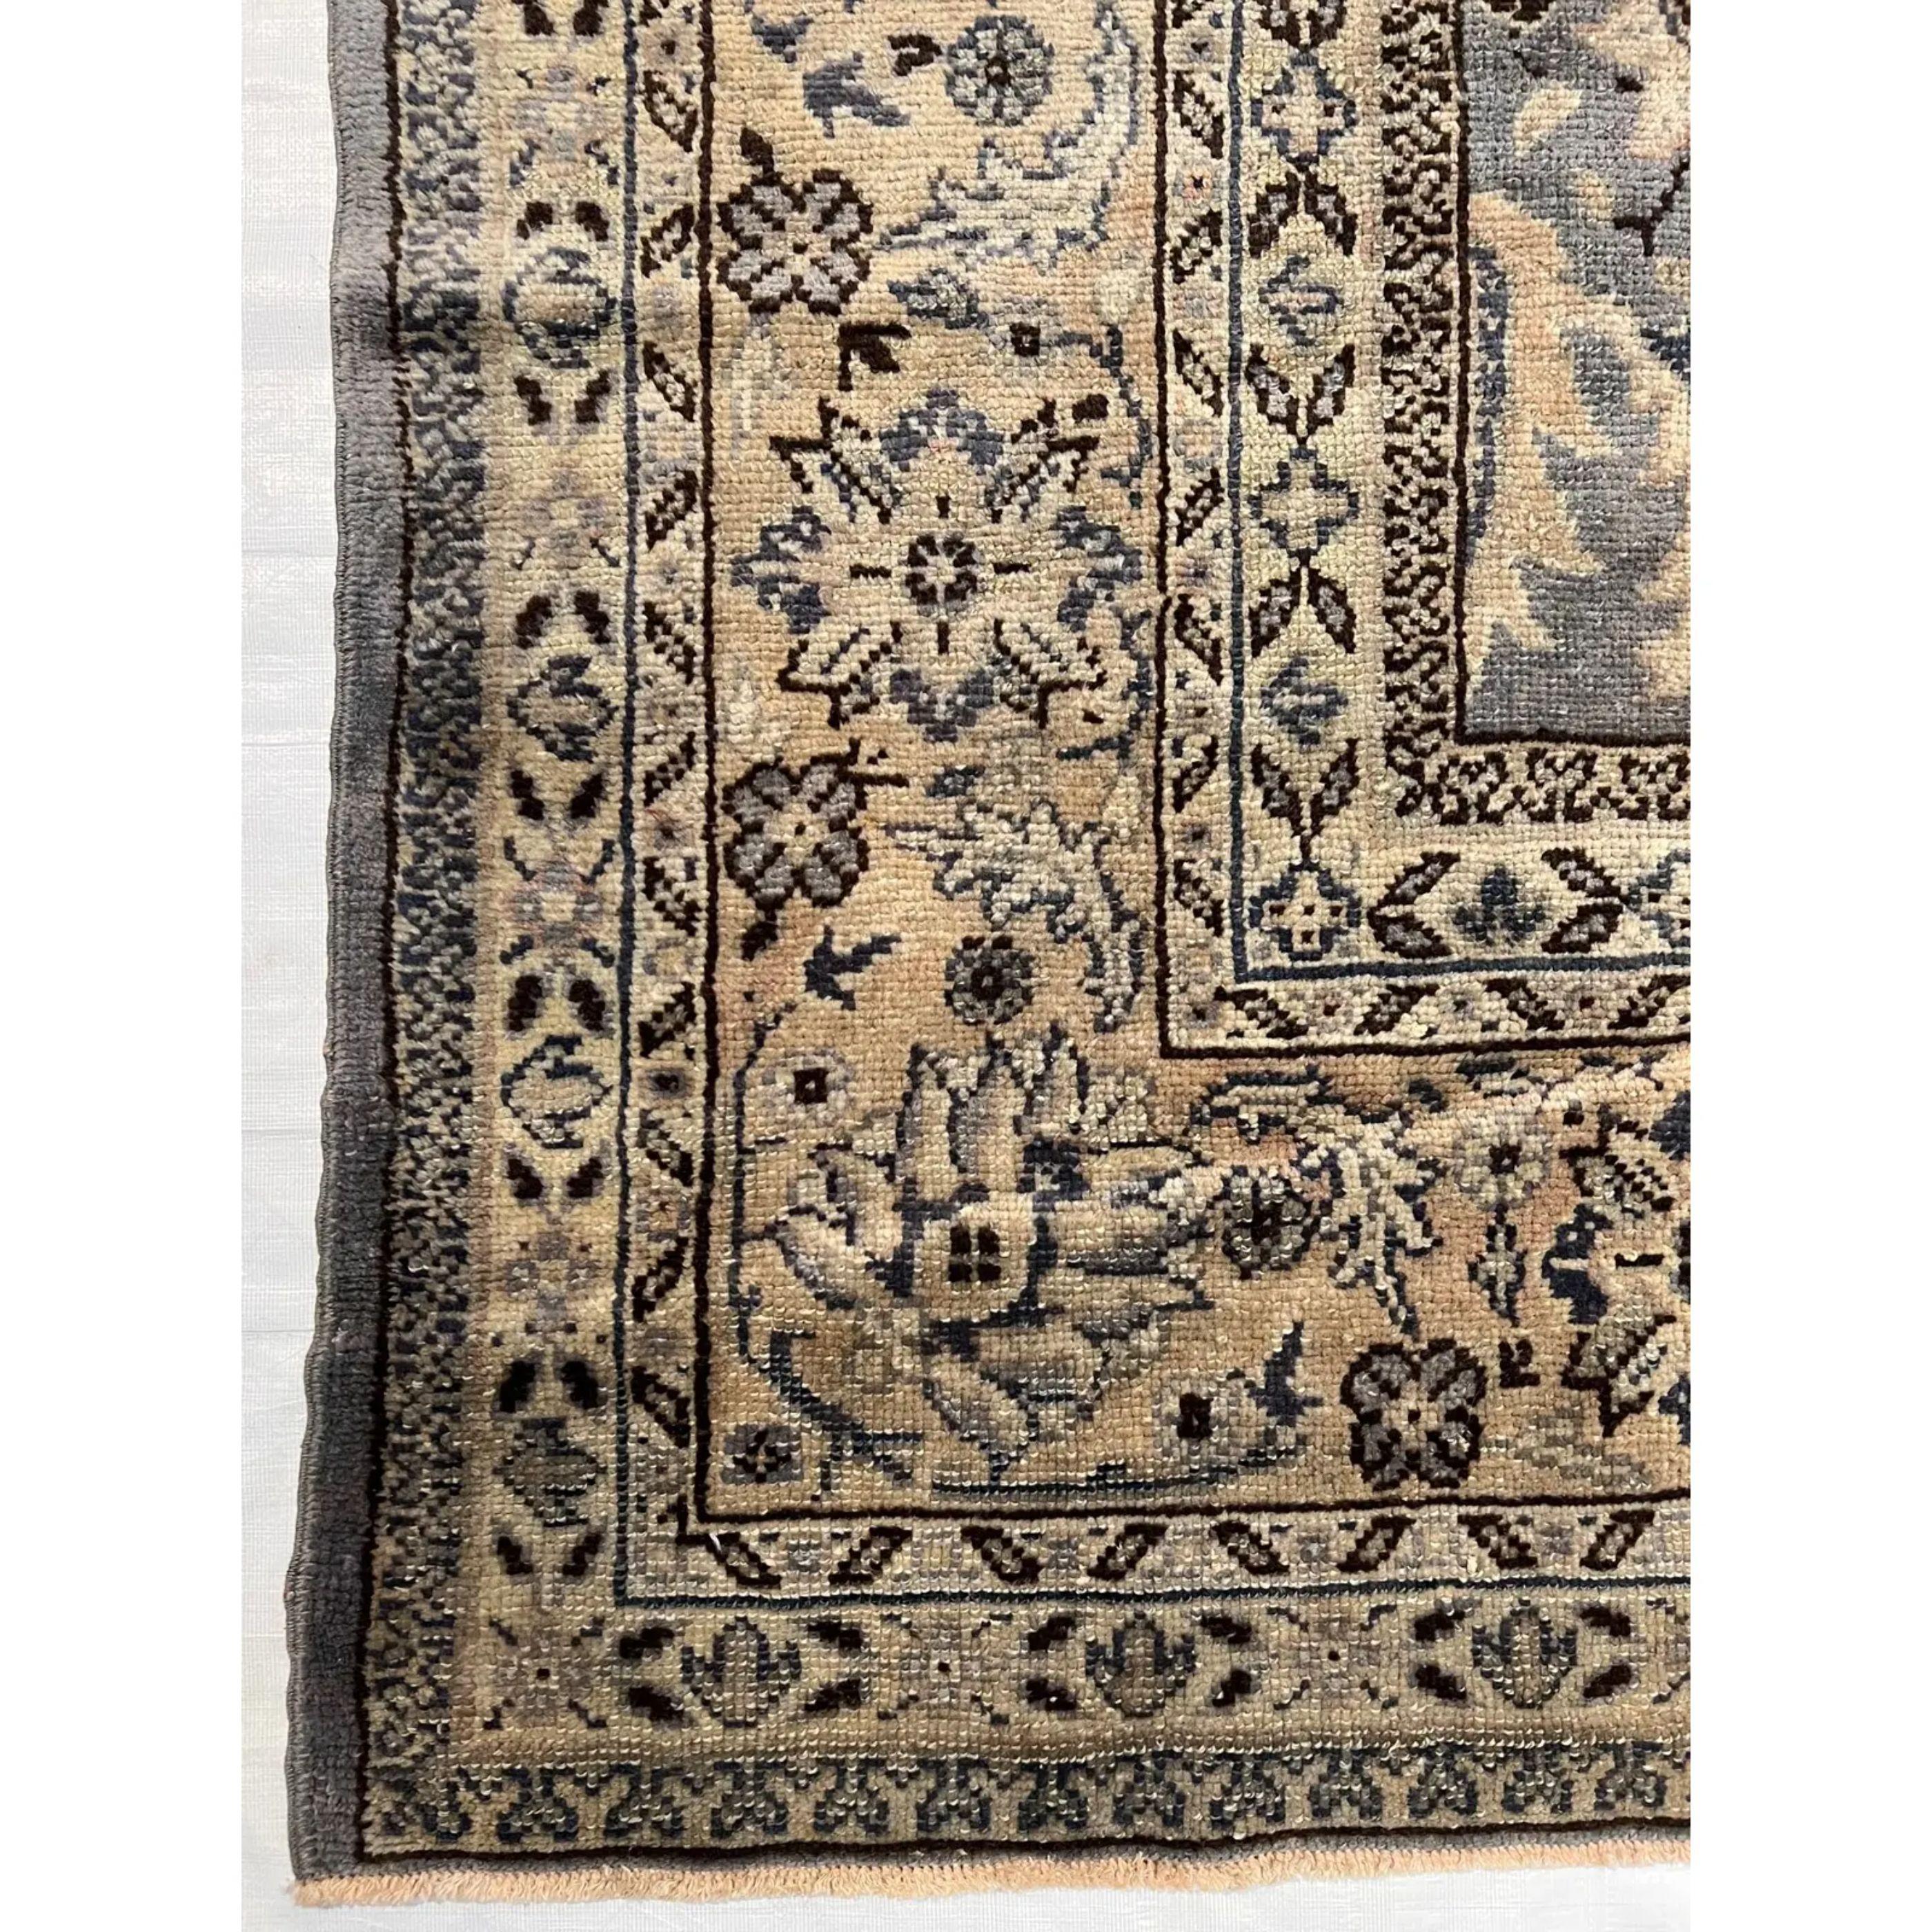 Les anciens tapis turcs Oushak sont tissés dans l'ouest de la Turquie depuis le début de la période ottomane. Les historiens leur attribuent la plupart des grands chefs-d'œuvre du tissage des tapis turcs du XVe au XVIIe siècle. En revanche, on sait